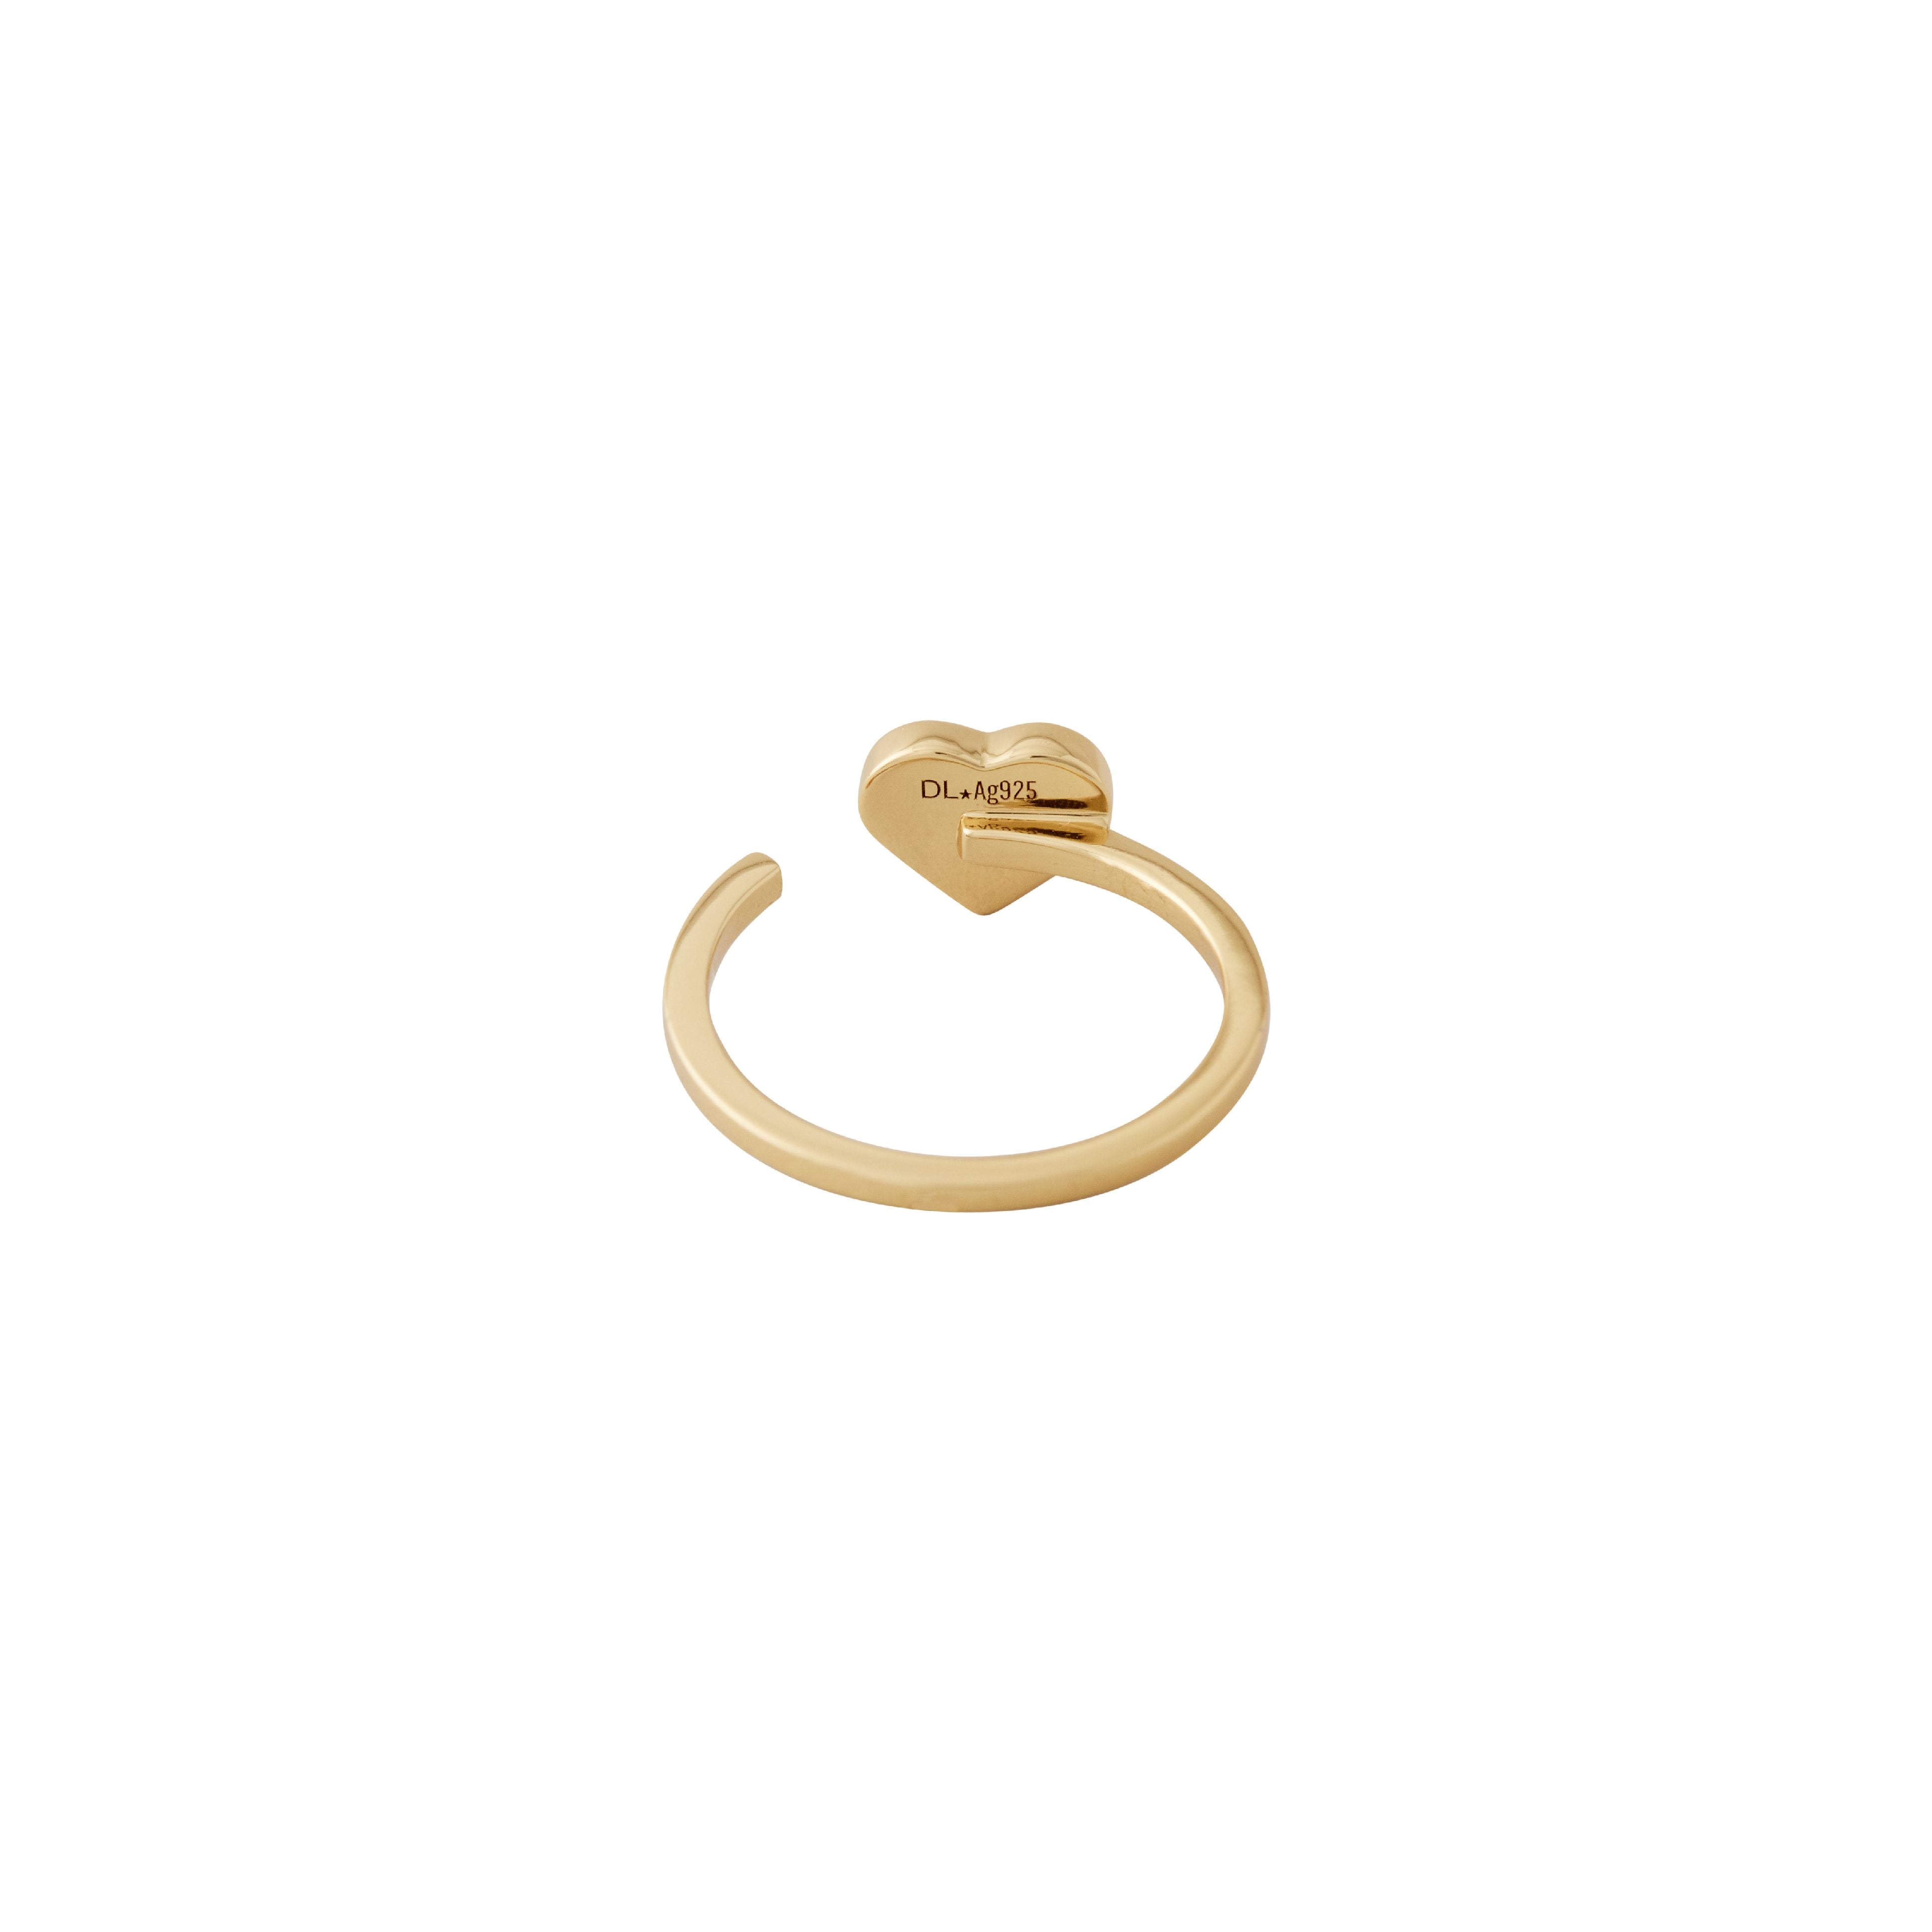 Design Letters Emalel Heart Ring Gold, Lavender